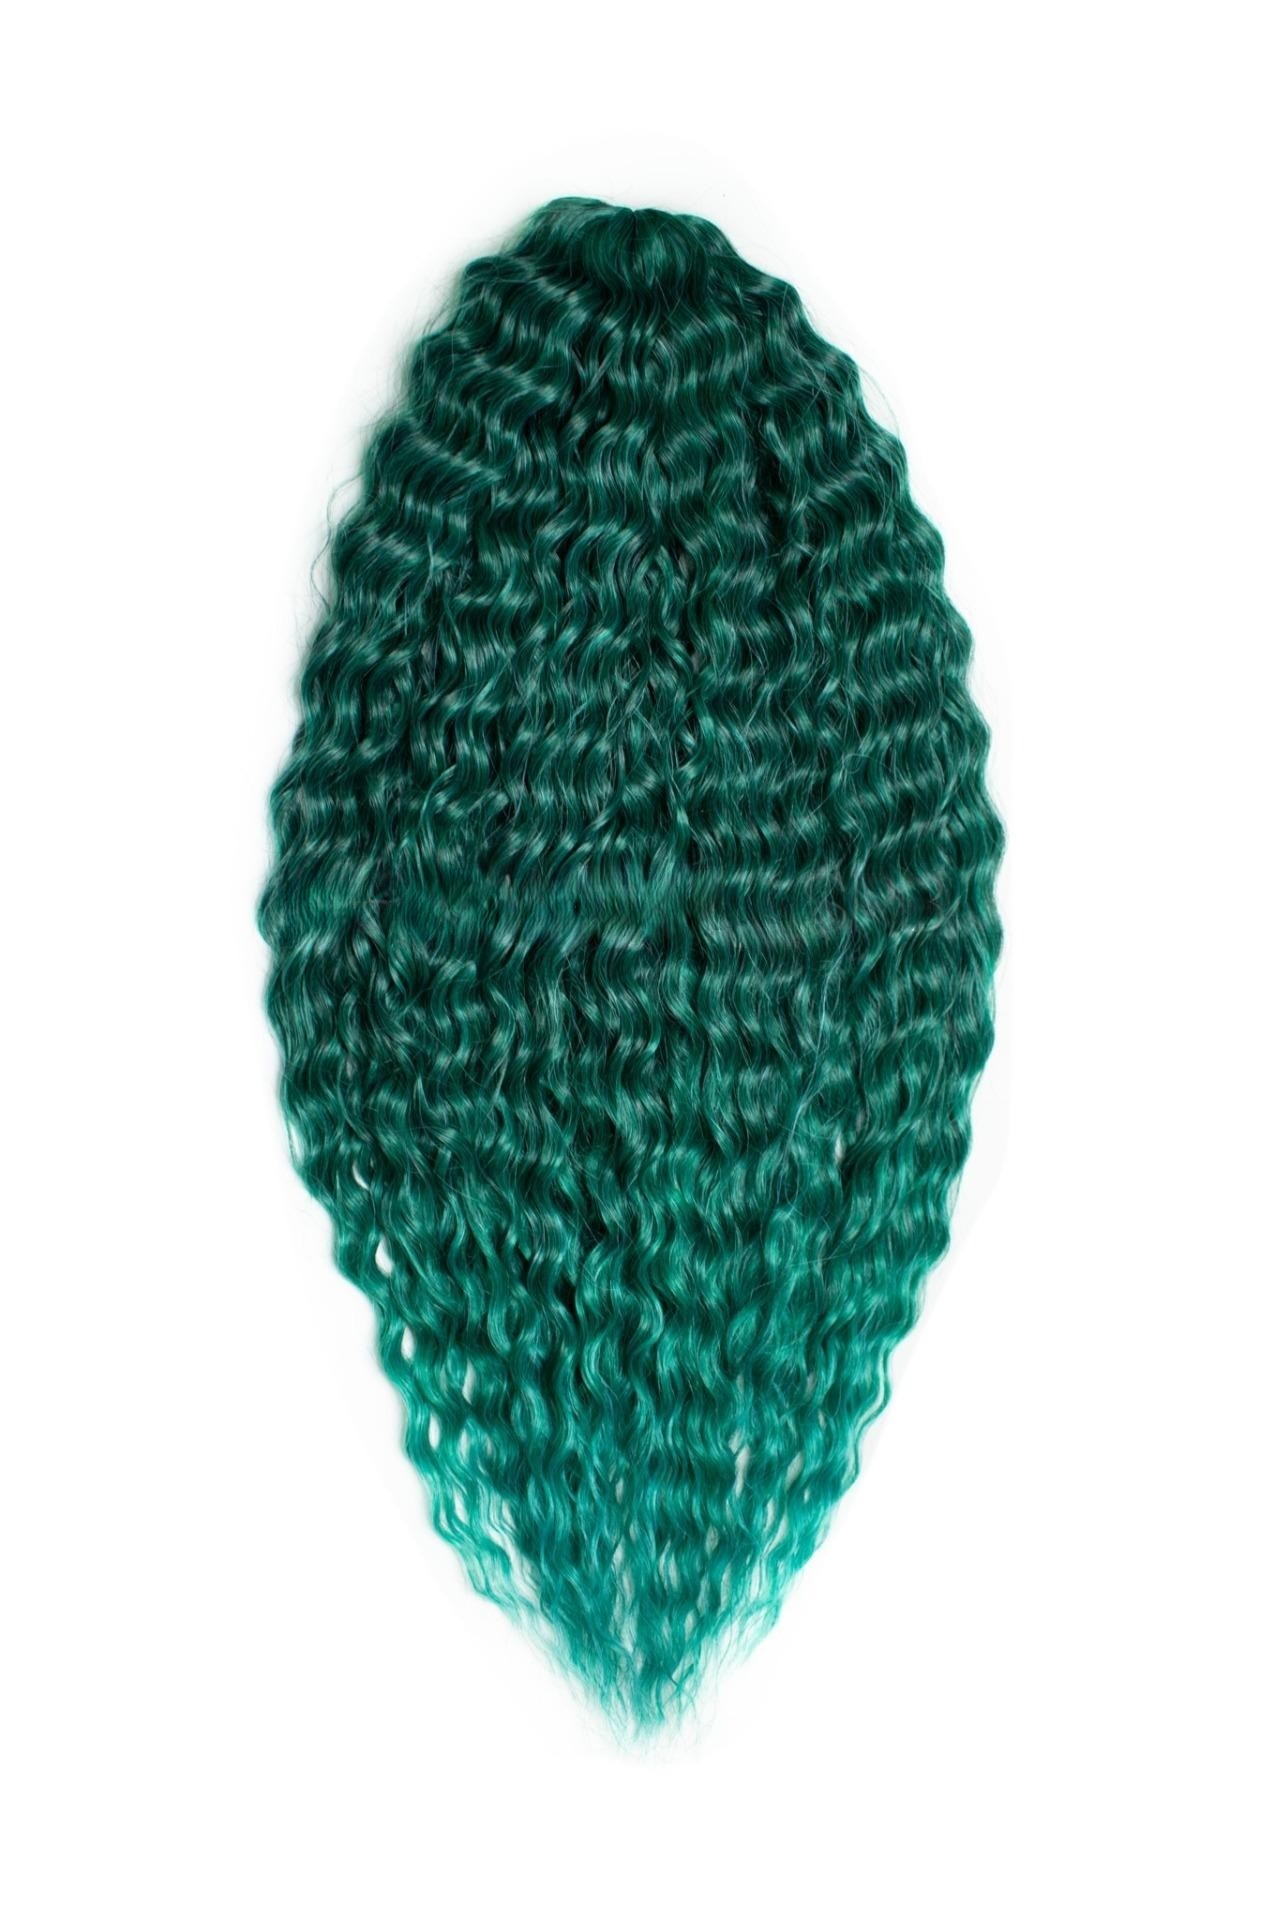 Афрокудри для плетения волос Ariel Ариэль цвет EMERALD зеленый длина 66см вес 300г афрокудри для плетения волос ariel ариэль fire оранжевый длина 66см вес 300г